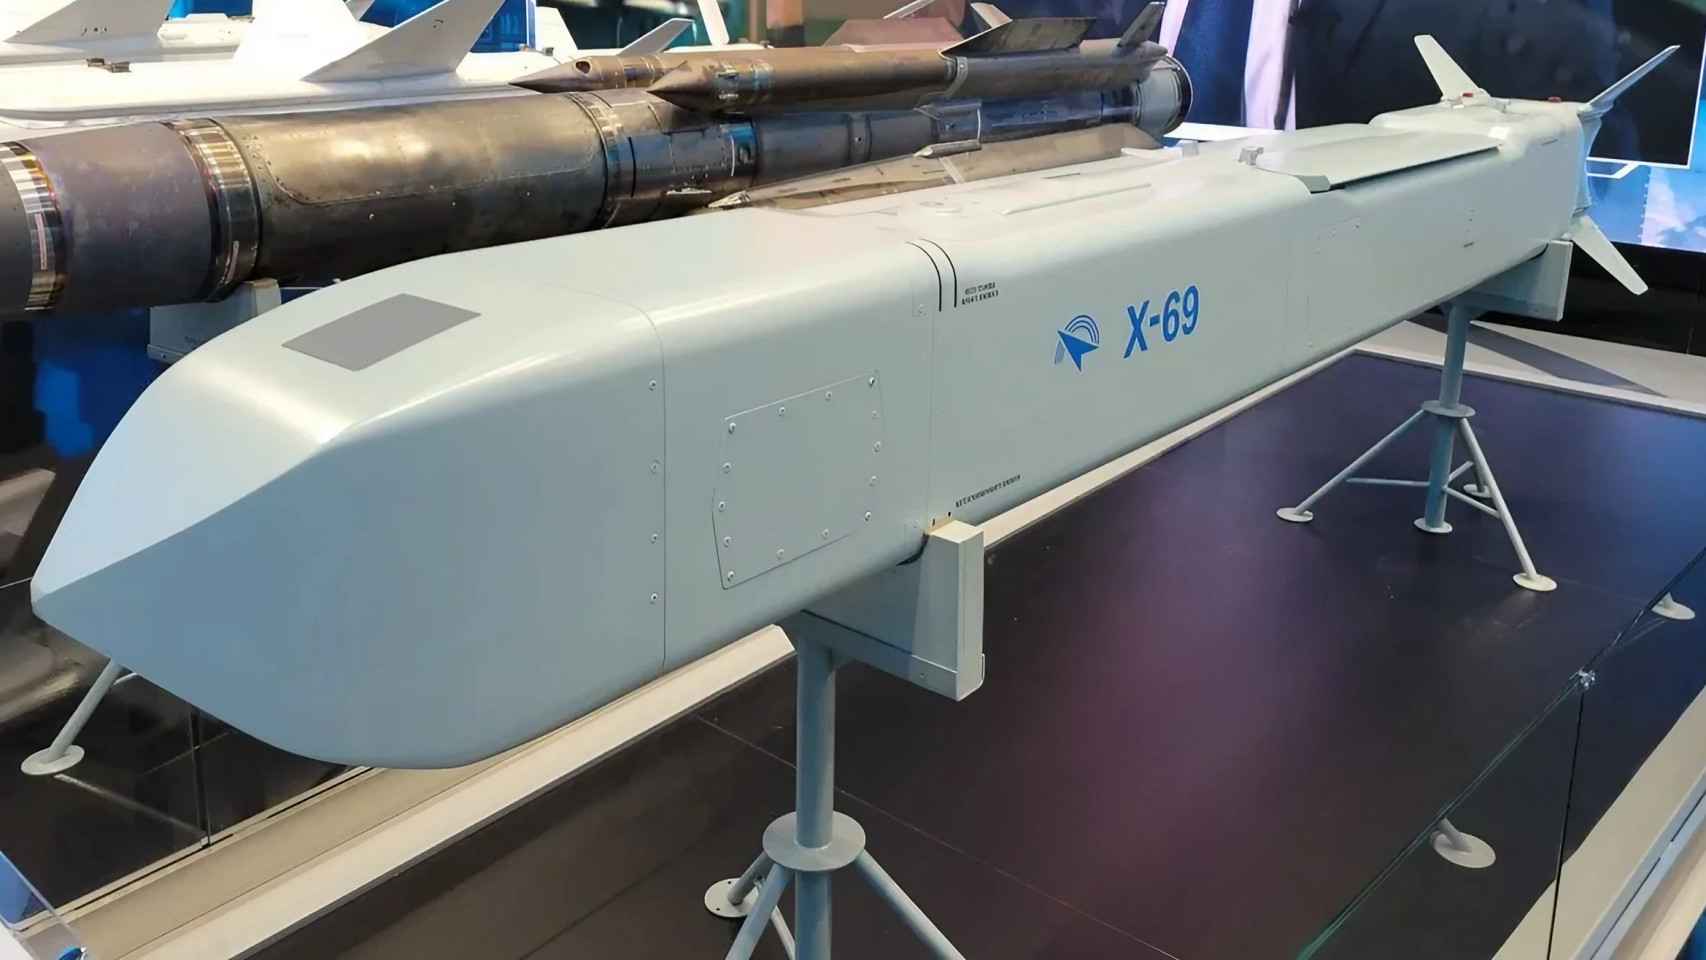 su-57, el caza ruso más letal ya está en ucrania: lanza misiles que derriban edificios y es invisible a los radares